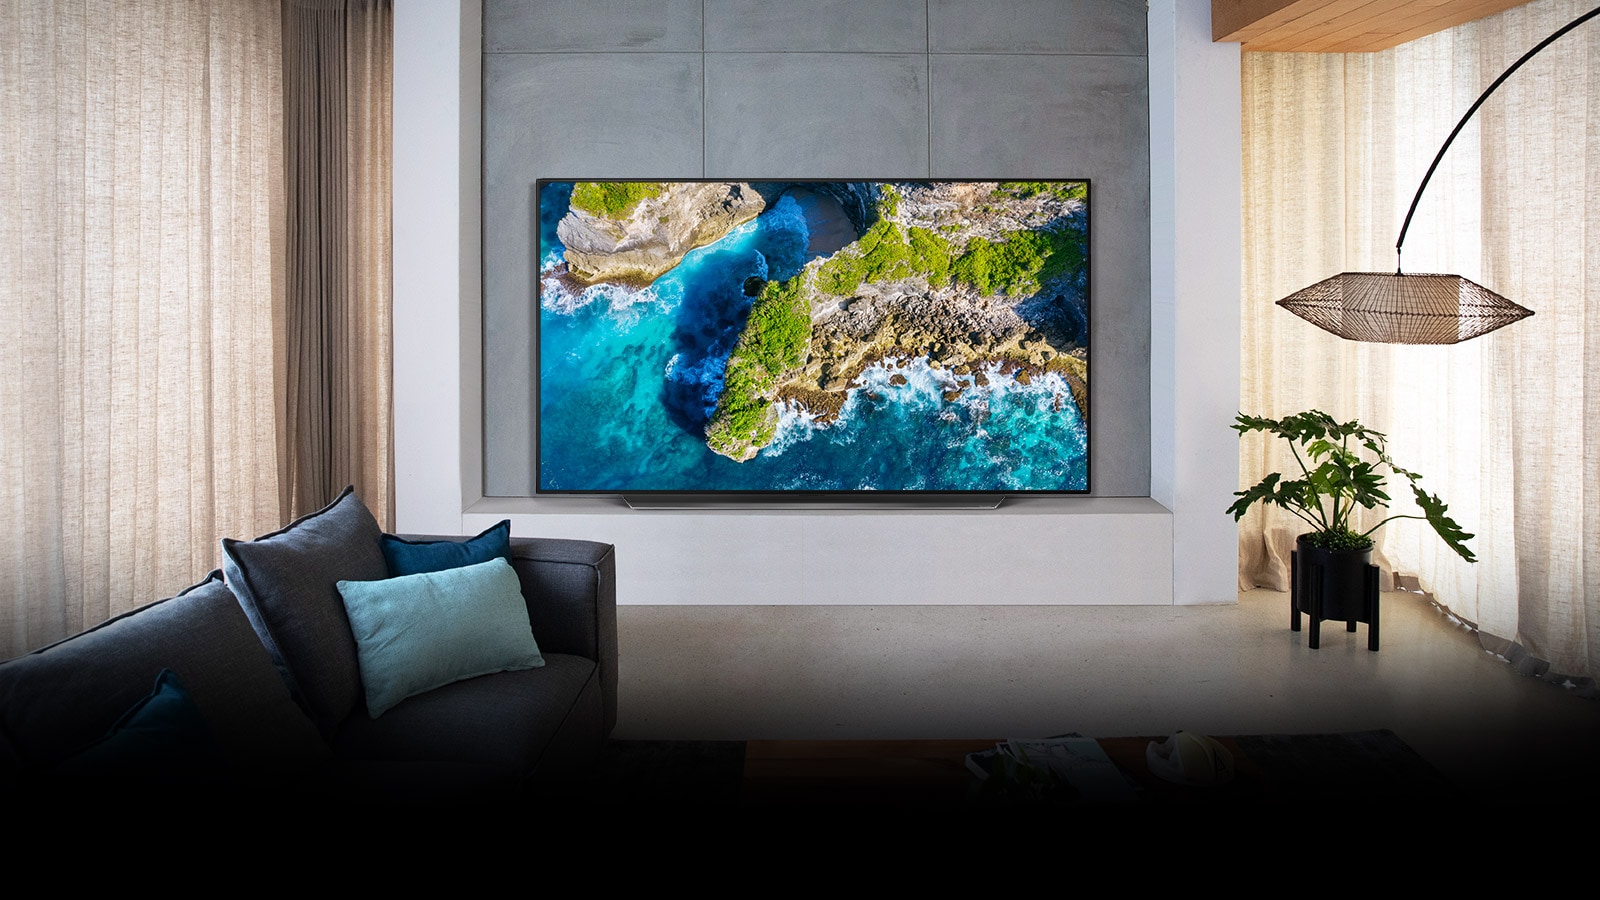 El televisor muestra una vista aérea de la naturaleza en un entorno doméstico lujoso